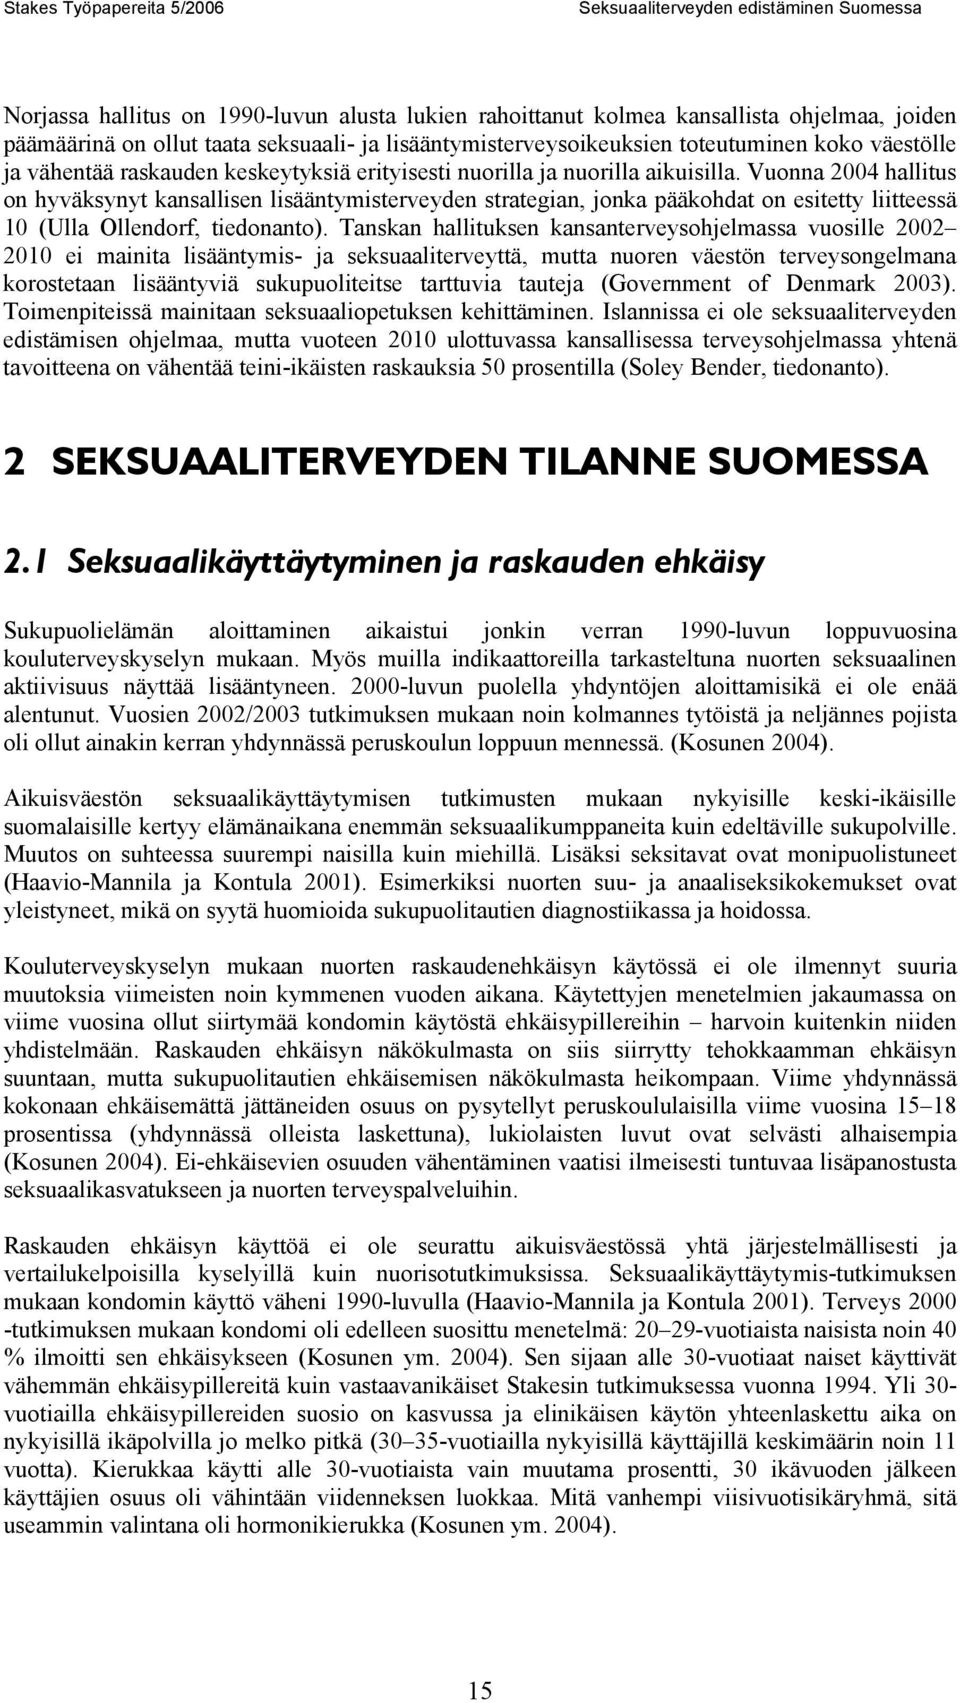 Vuonna 2004 hallitus on hyväksynyt kansallisen lisääntymisterveyden strategian, jonka pääkohdat on esitetty liitteessä 10 (Ulla Ollendorf, tiedonanto).